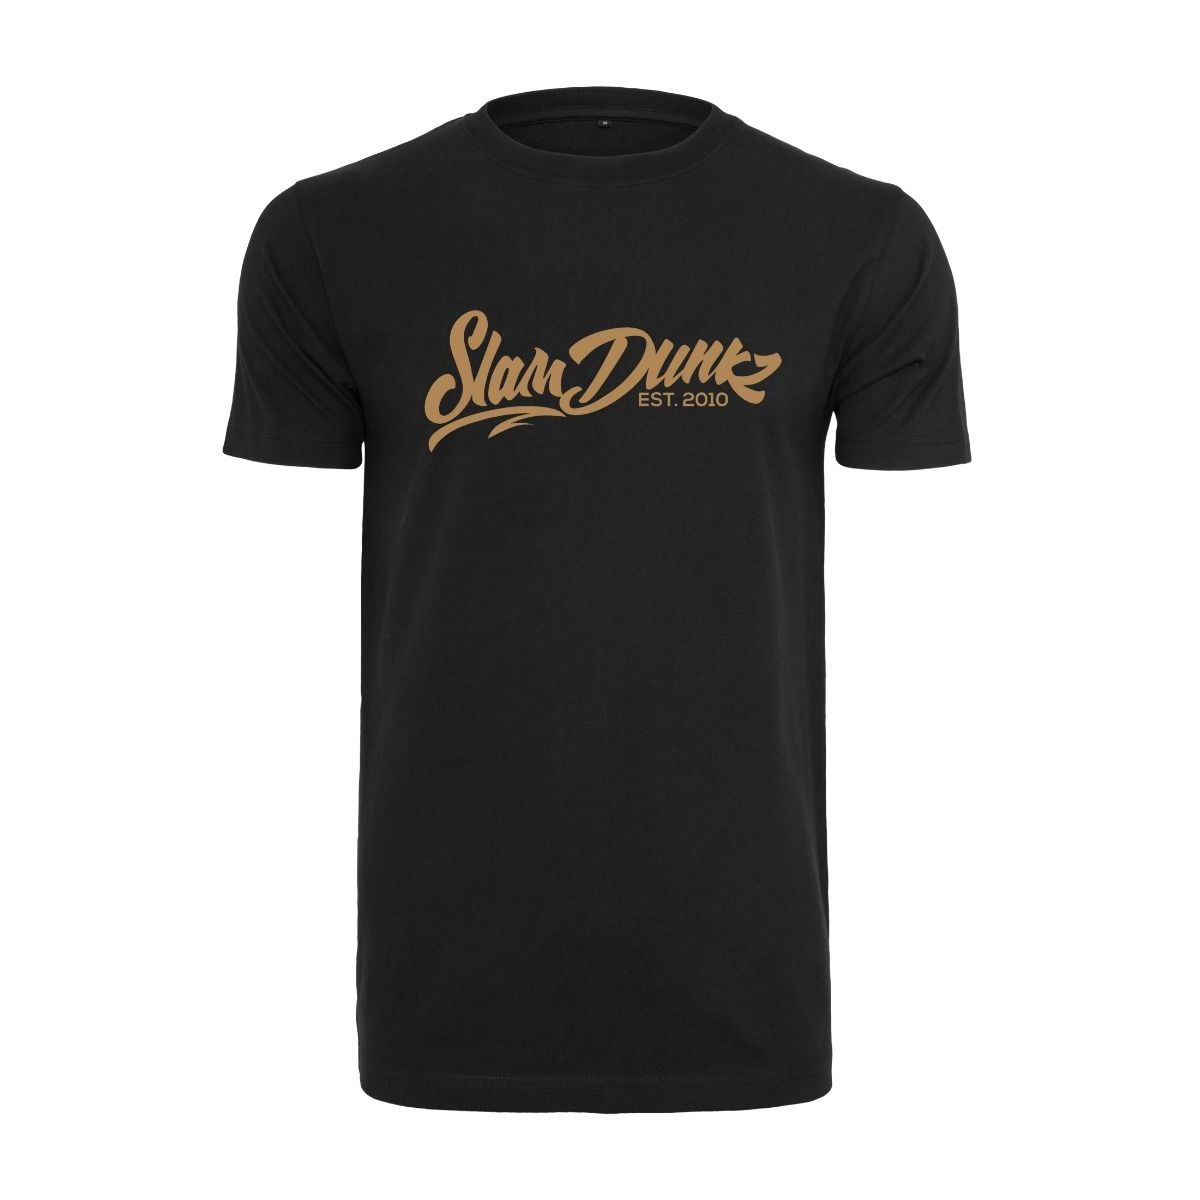 Slamdunkz - Gold Logo Burgundy T-Shirt